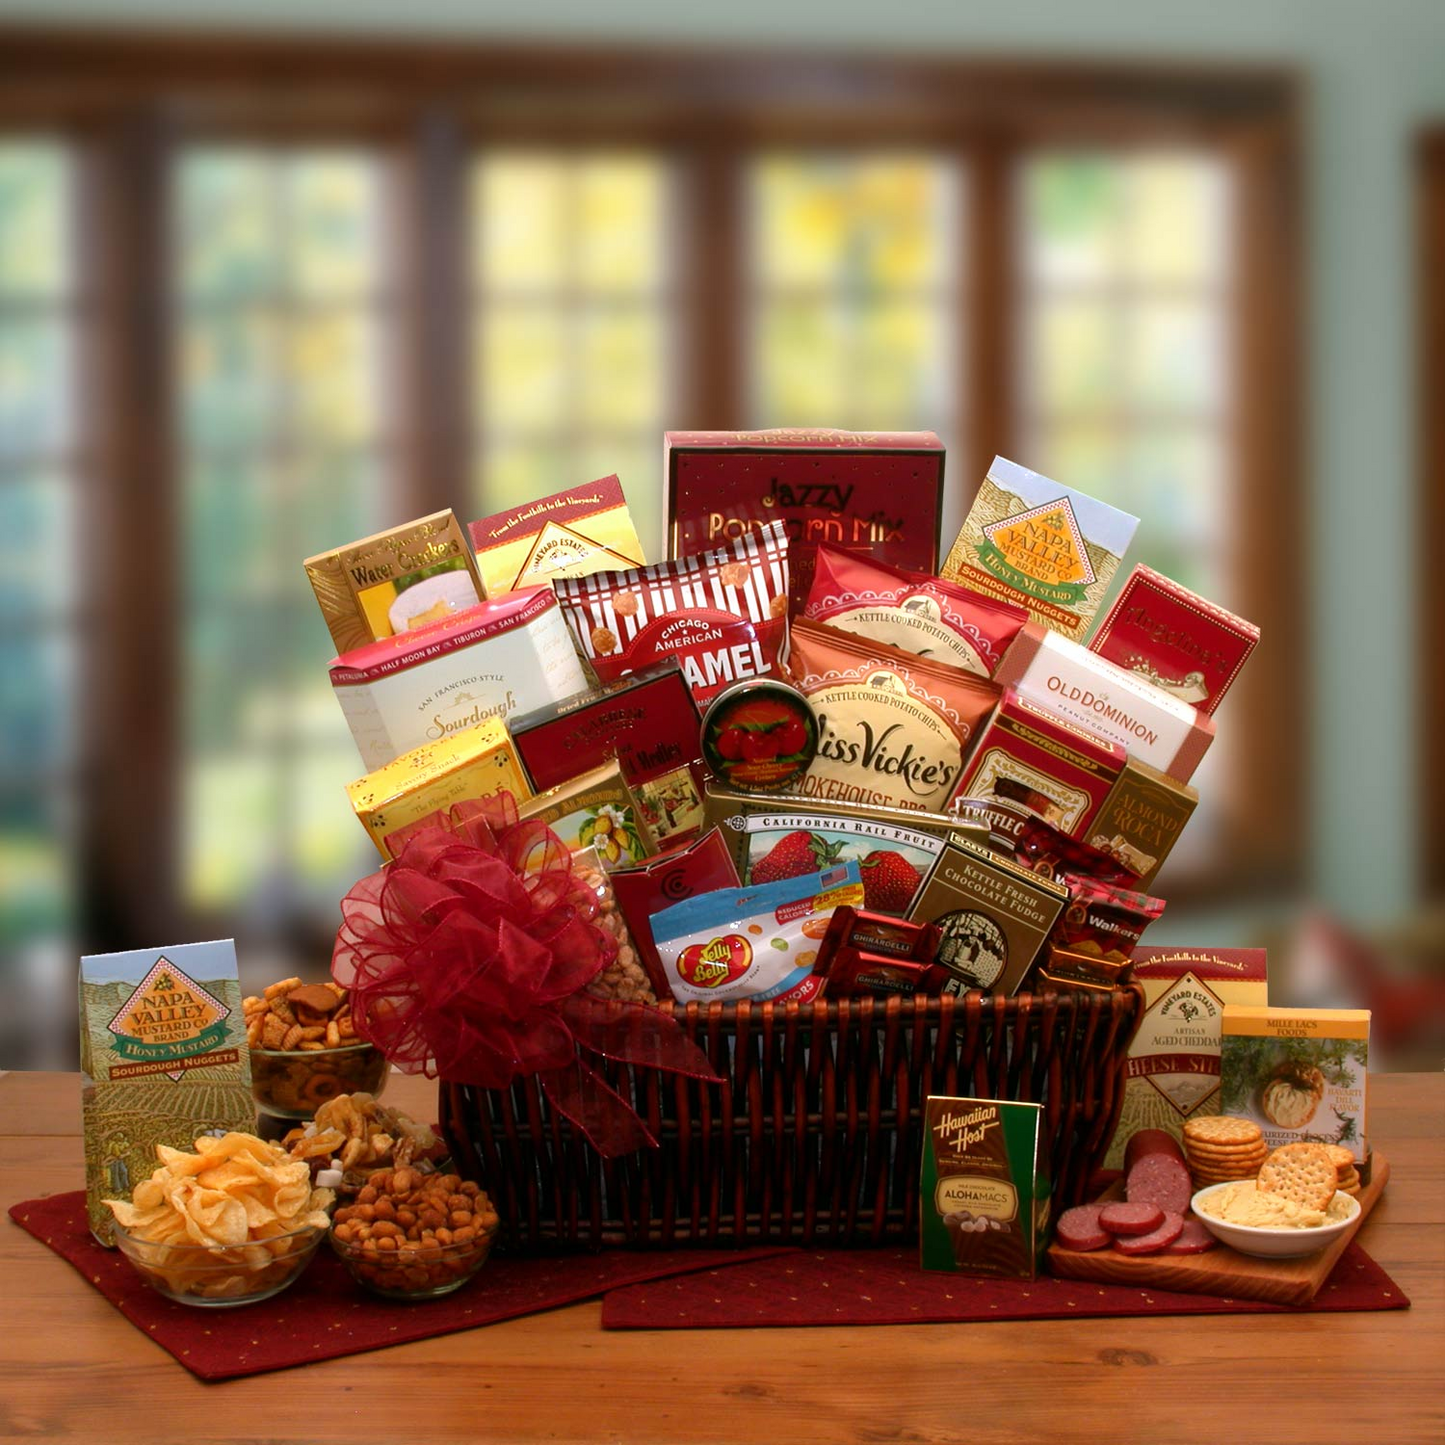 Gourmet Ambassador Gourmet Gift Basket - A Delightful Assortment of Gourmet Delicacies